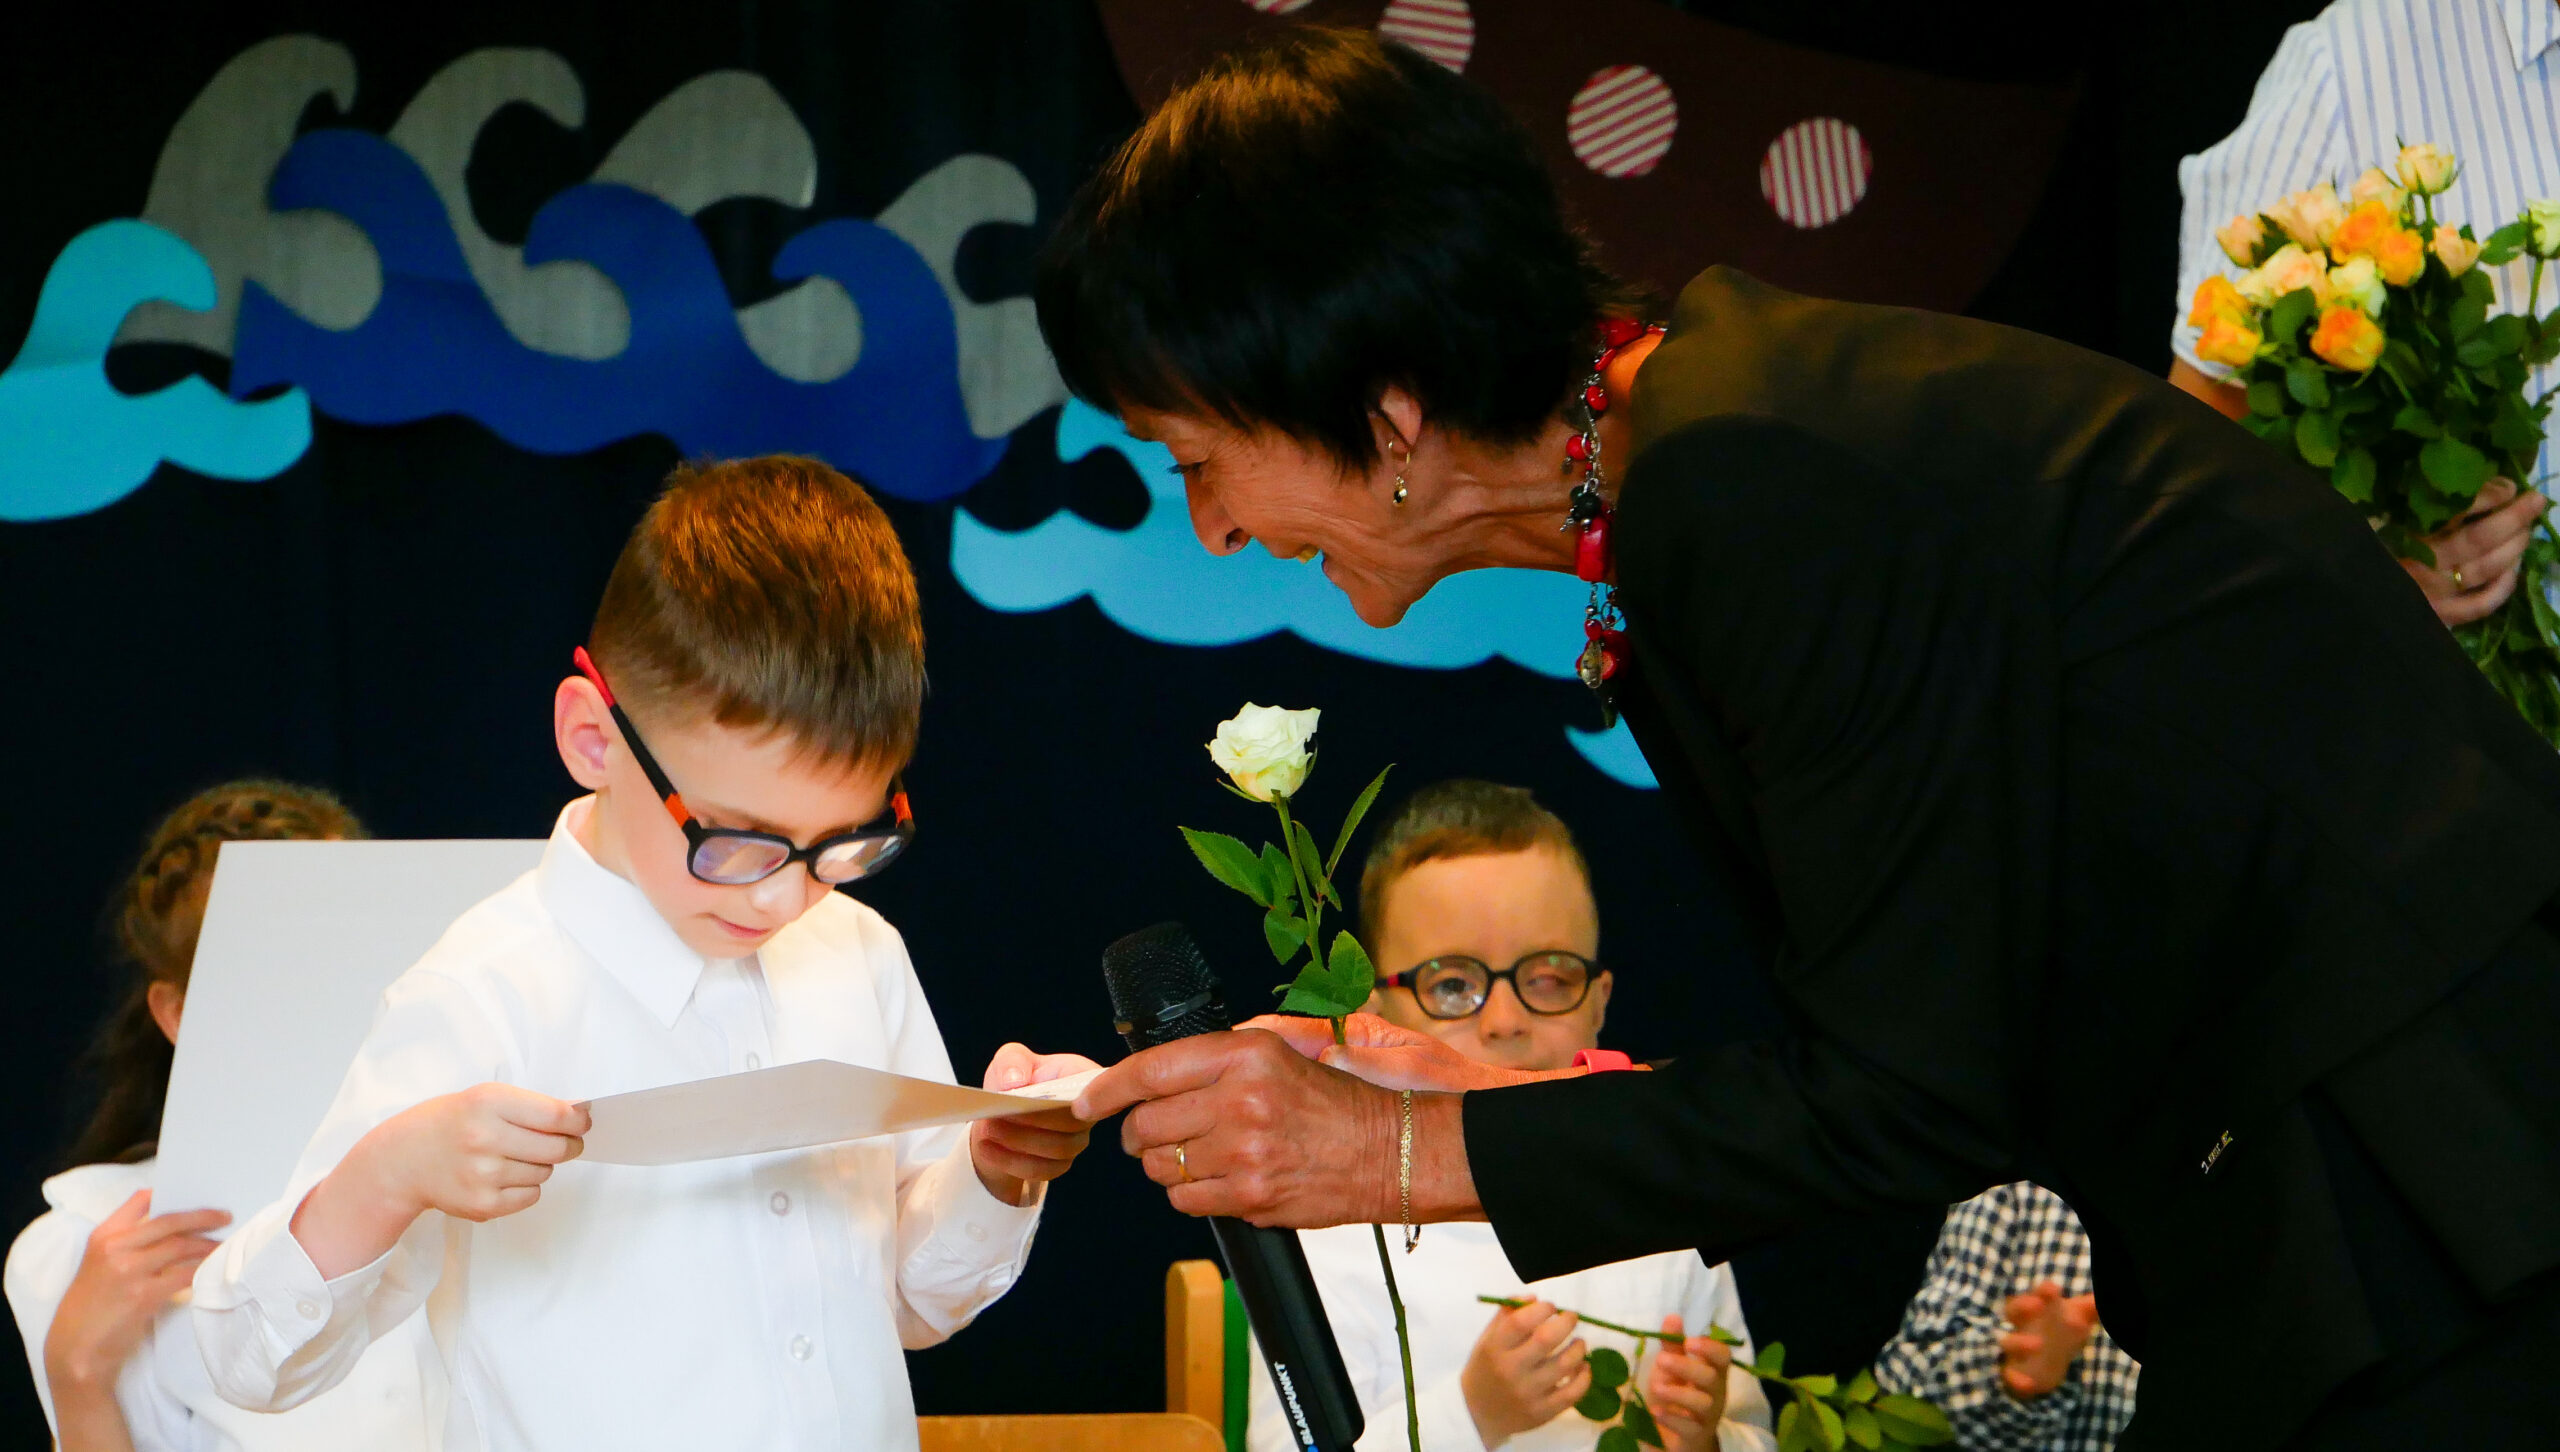 Pani Elżbieta Szczepkowska wręcza dyplom chłopcu.